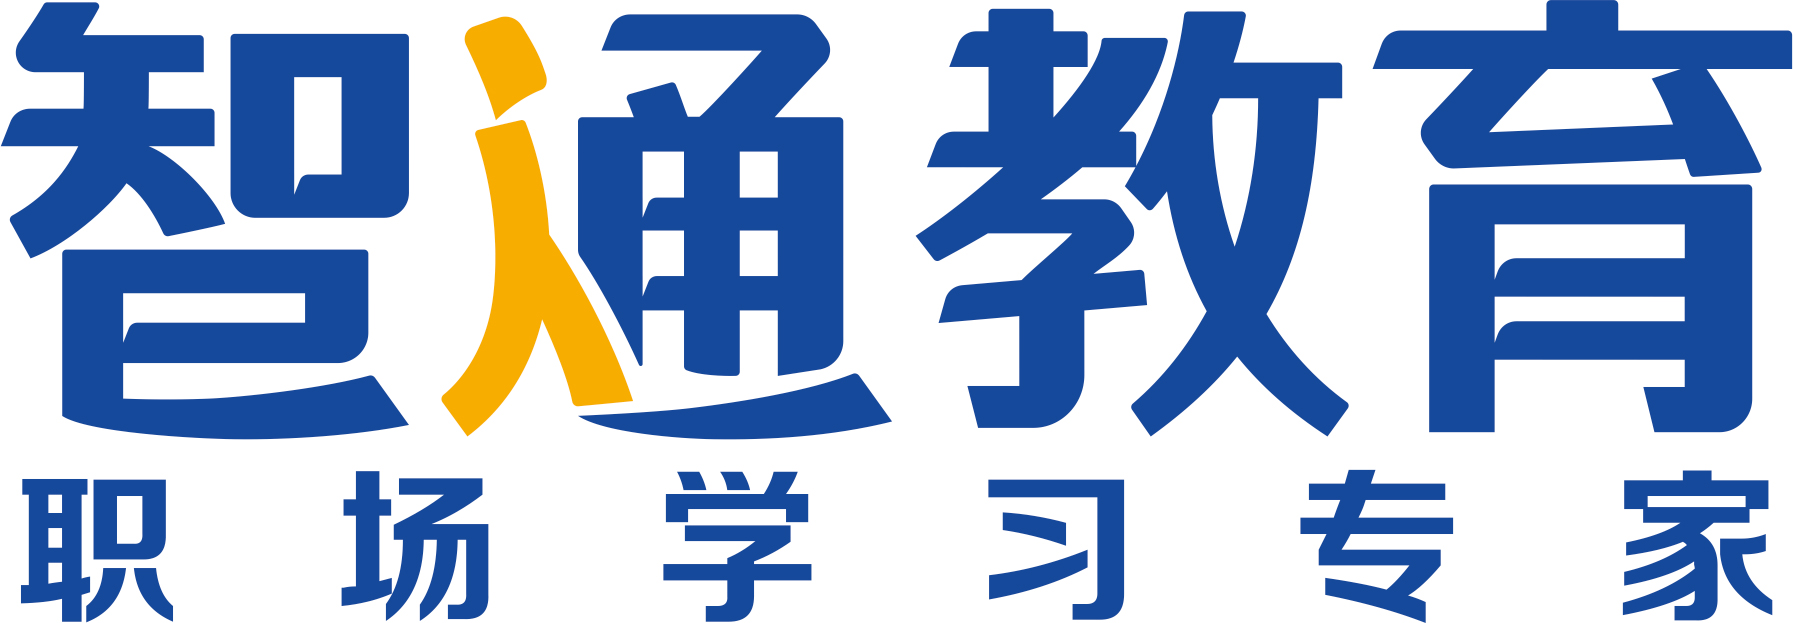 东莞市智通教育咨询服务有限公司logo